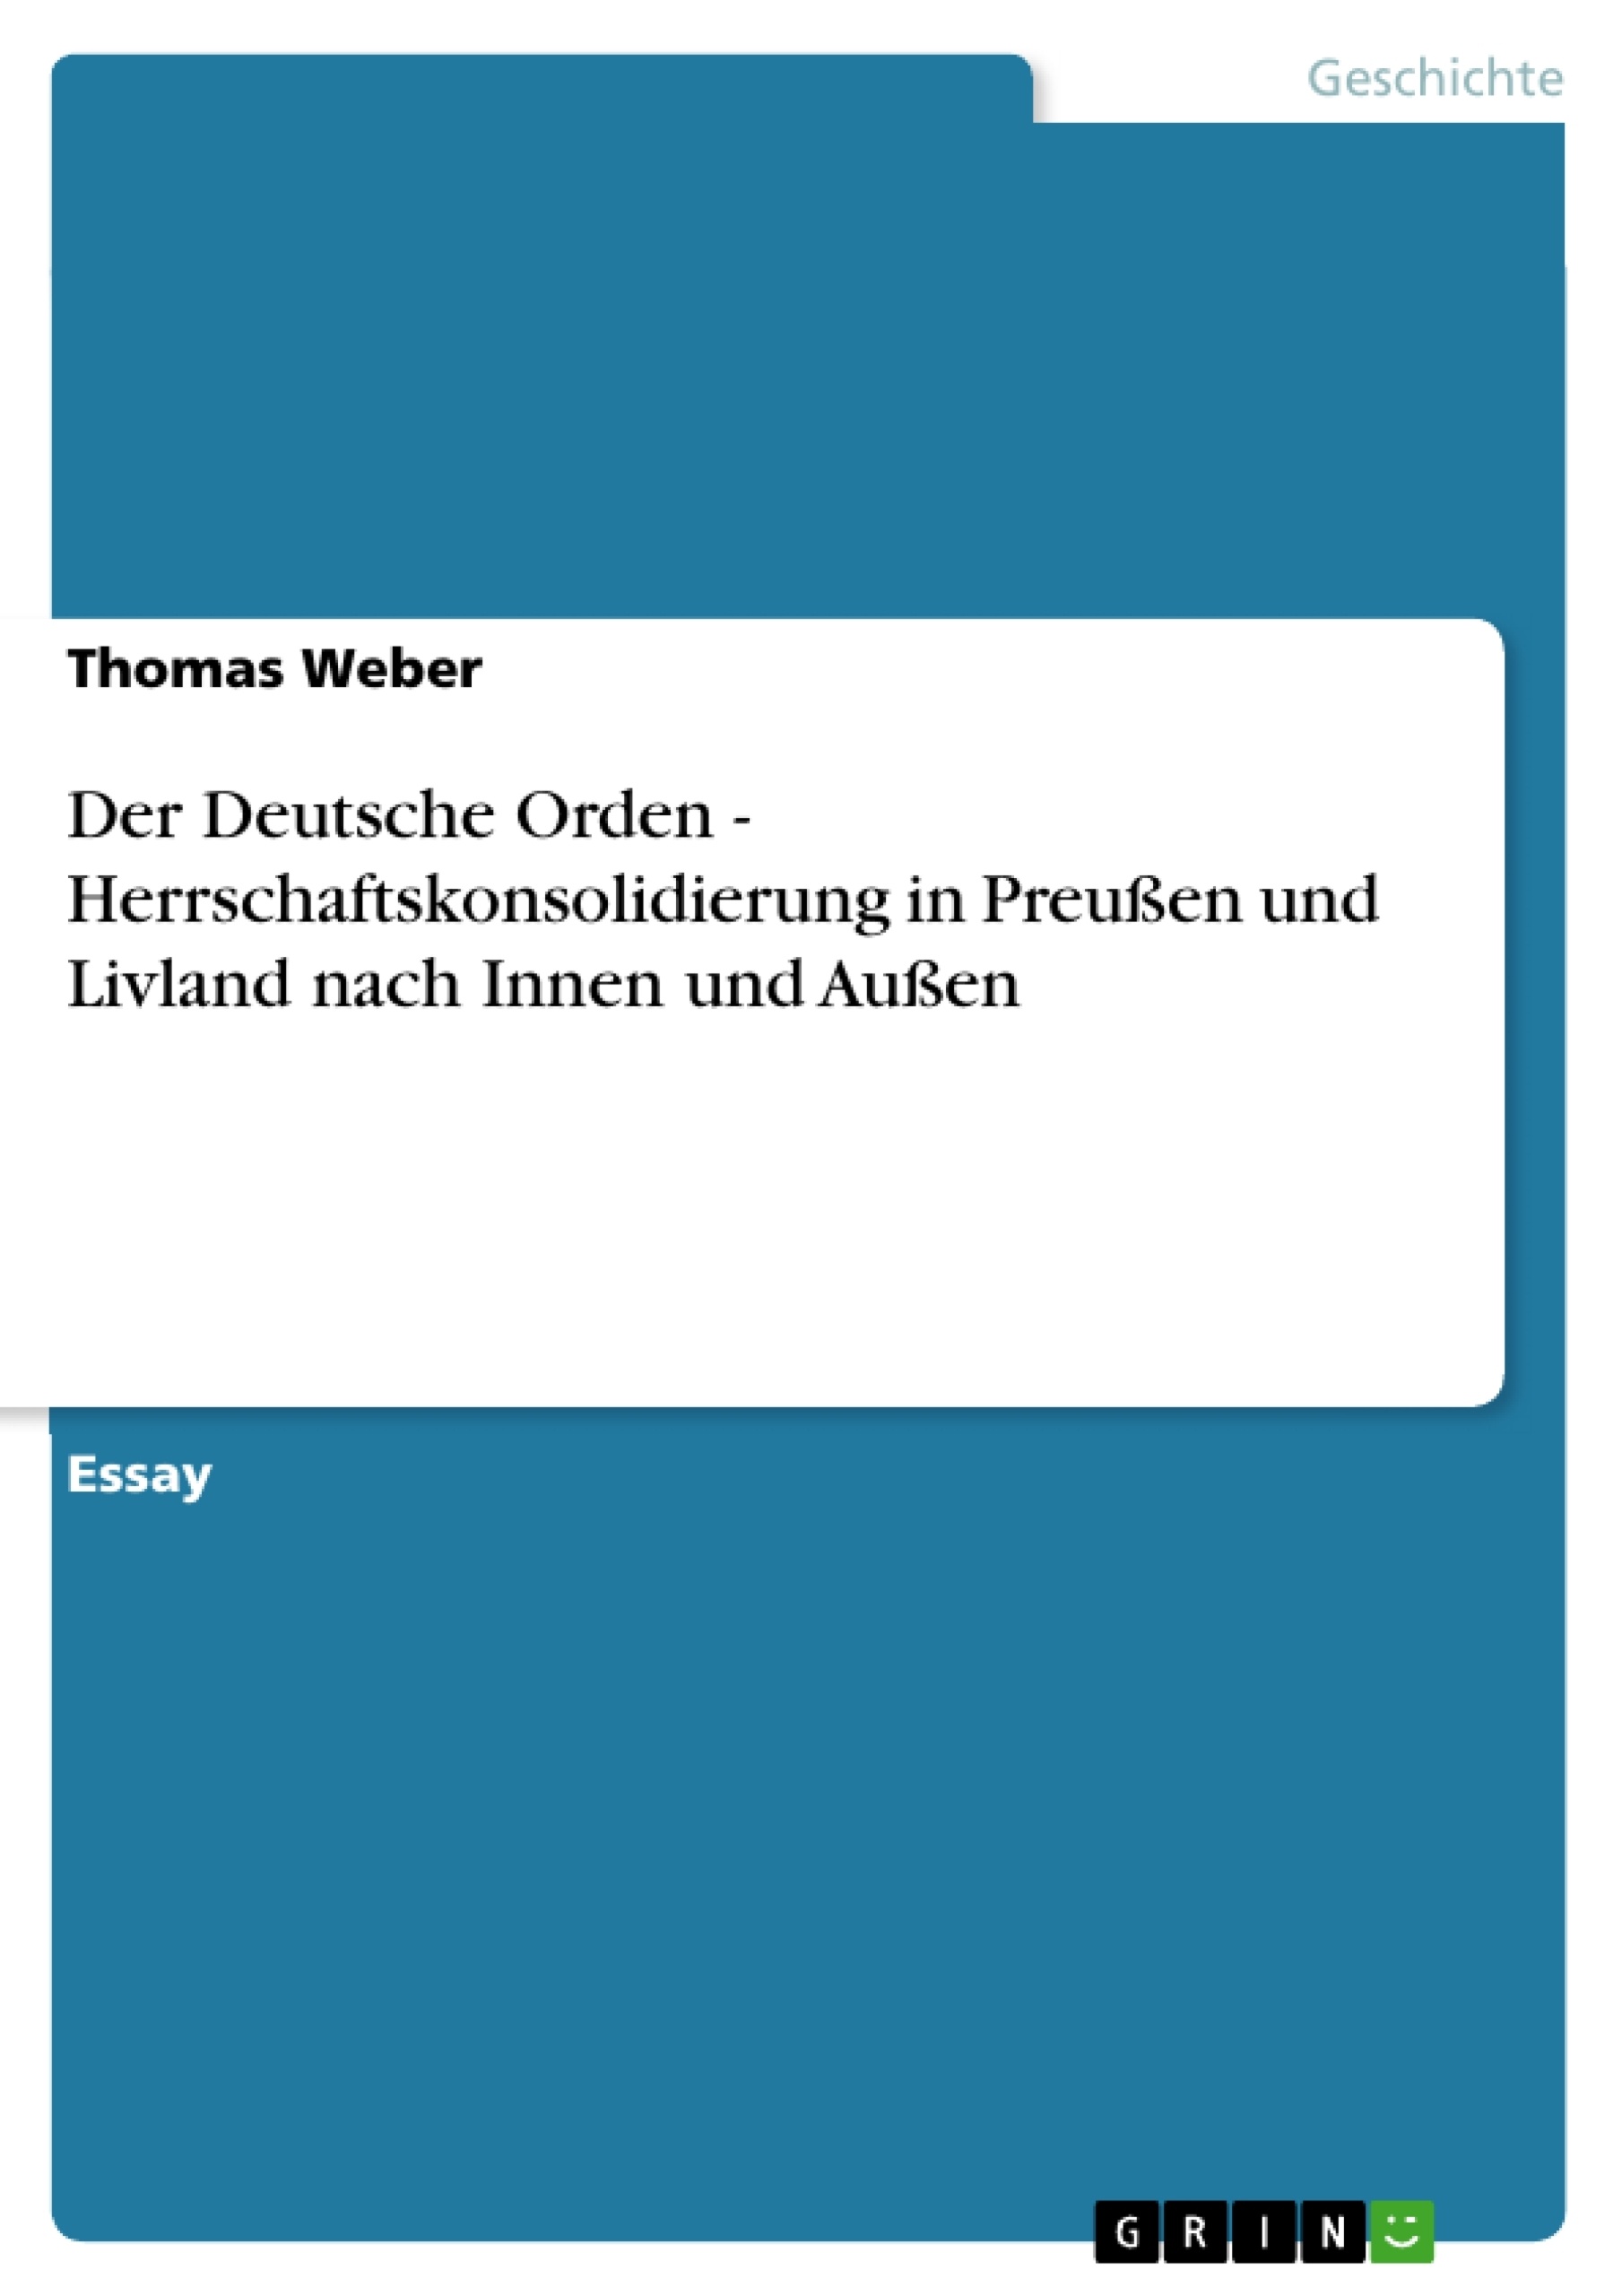 Título: Der Deutsche Orden - Herrschaftskonsolidierung in Preußen und Livland nach Innen und Außen